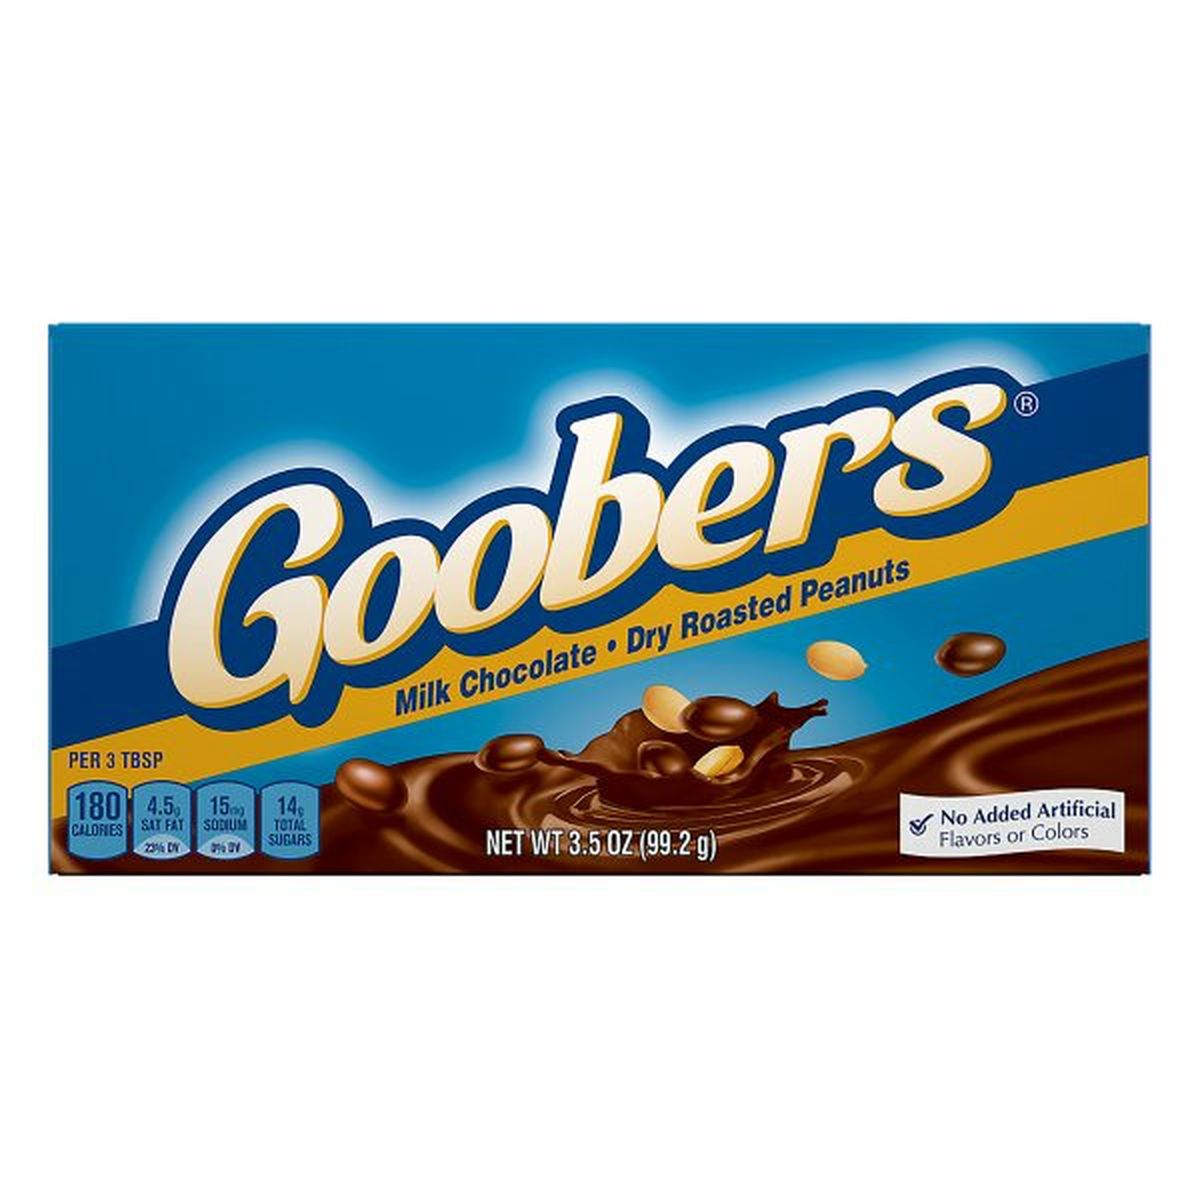 Calories in Goobers Dry Roasted Peanuts, Milk Chocolate